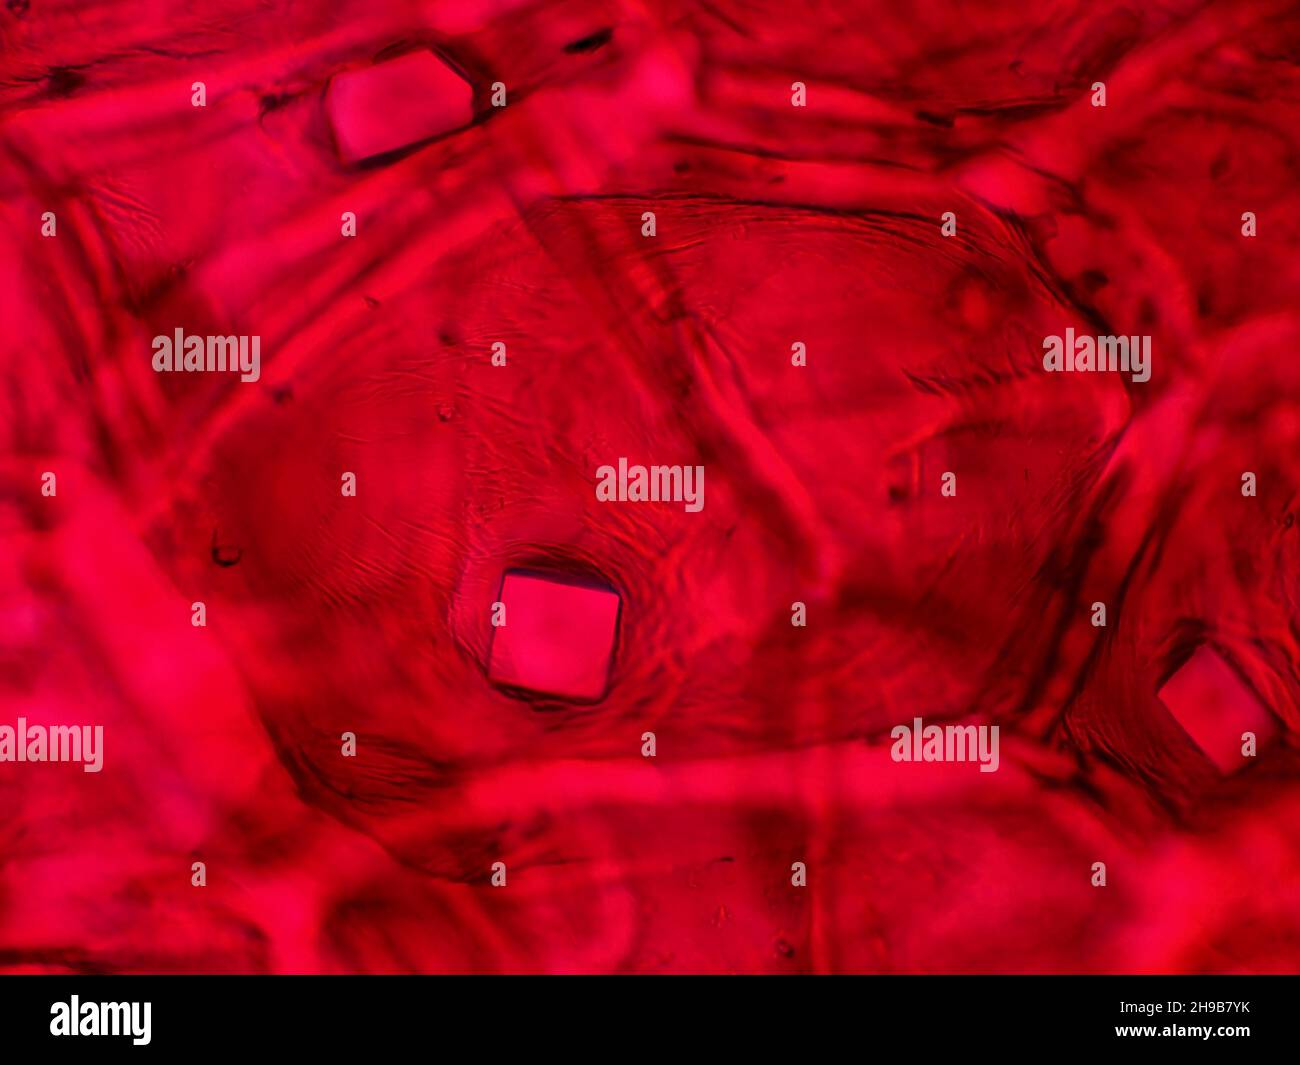 Rote Zwiebelhaut mit Oxalatkristallen unter dem Mikroskop, horizontales Sichtfeld ist etwa 0,24mm Stockfoto